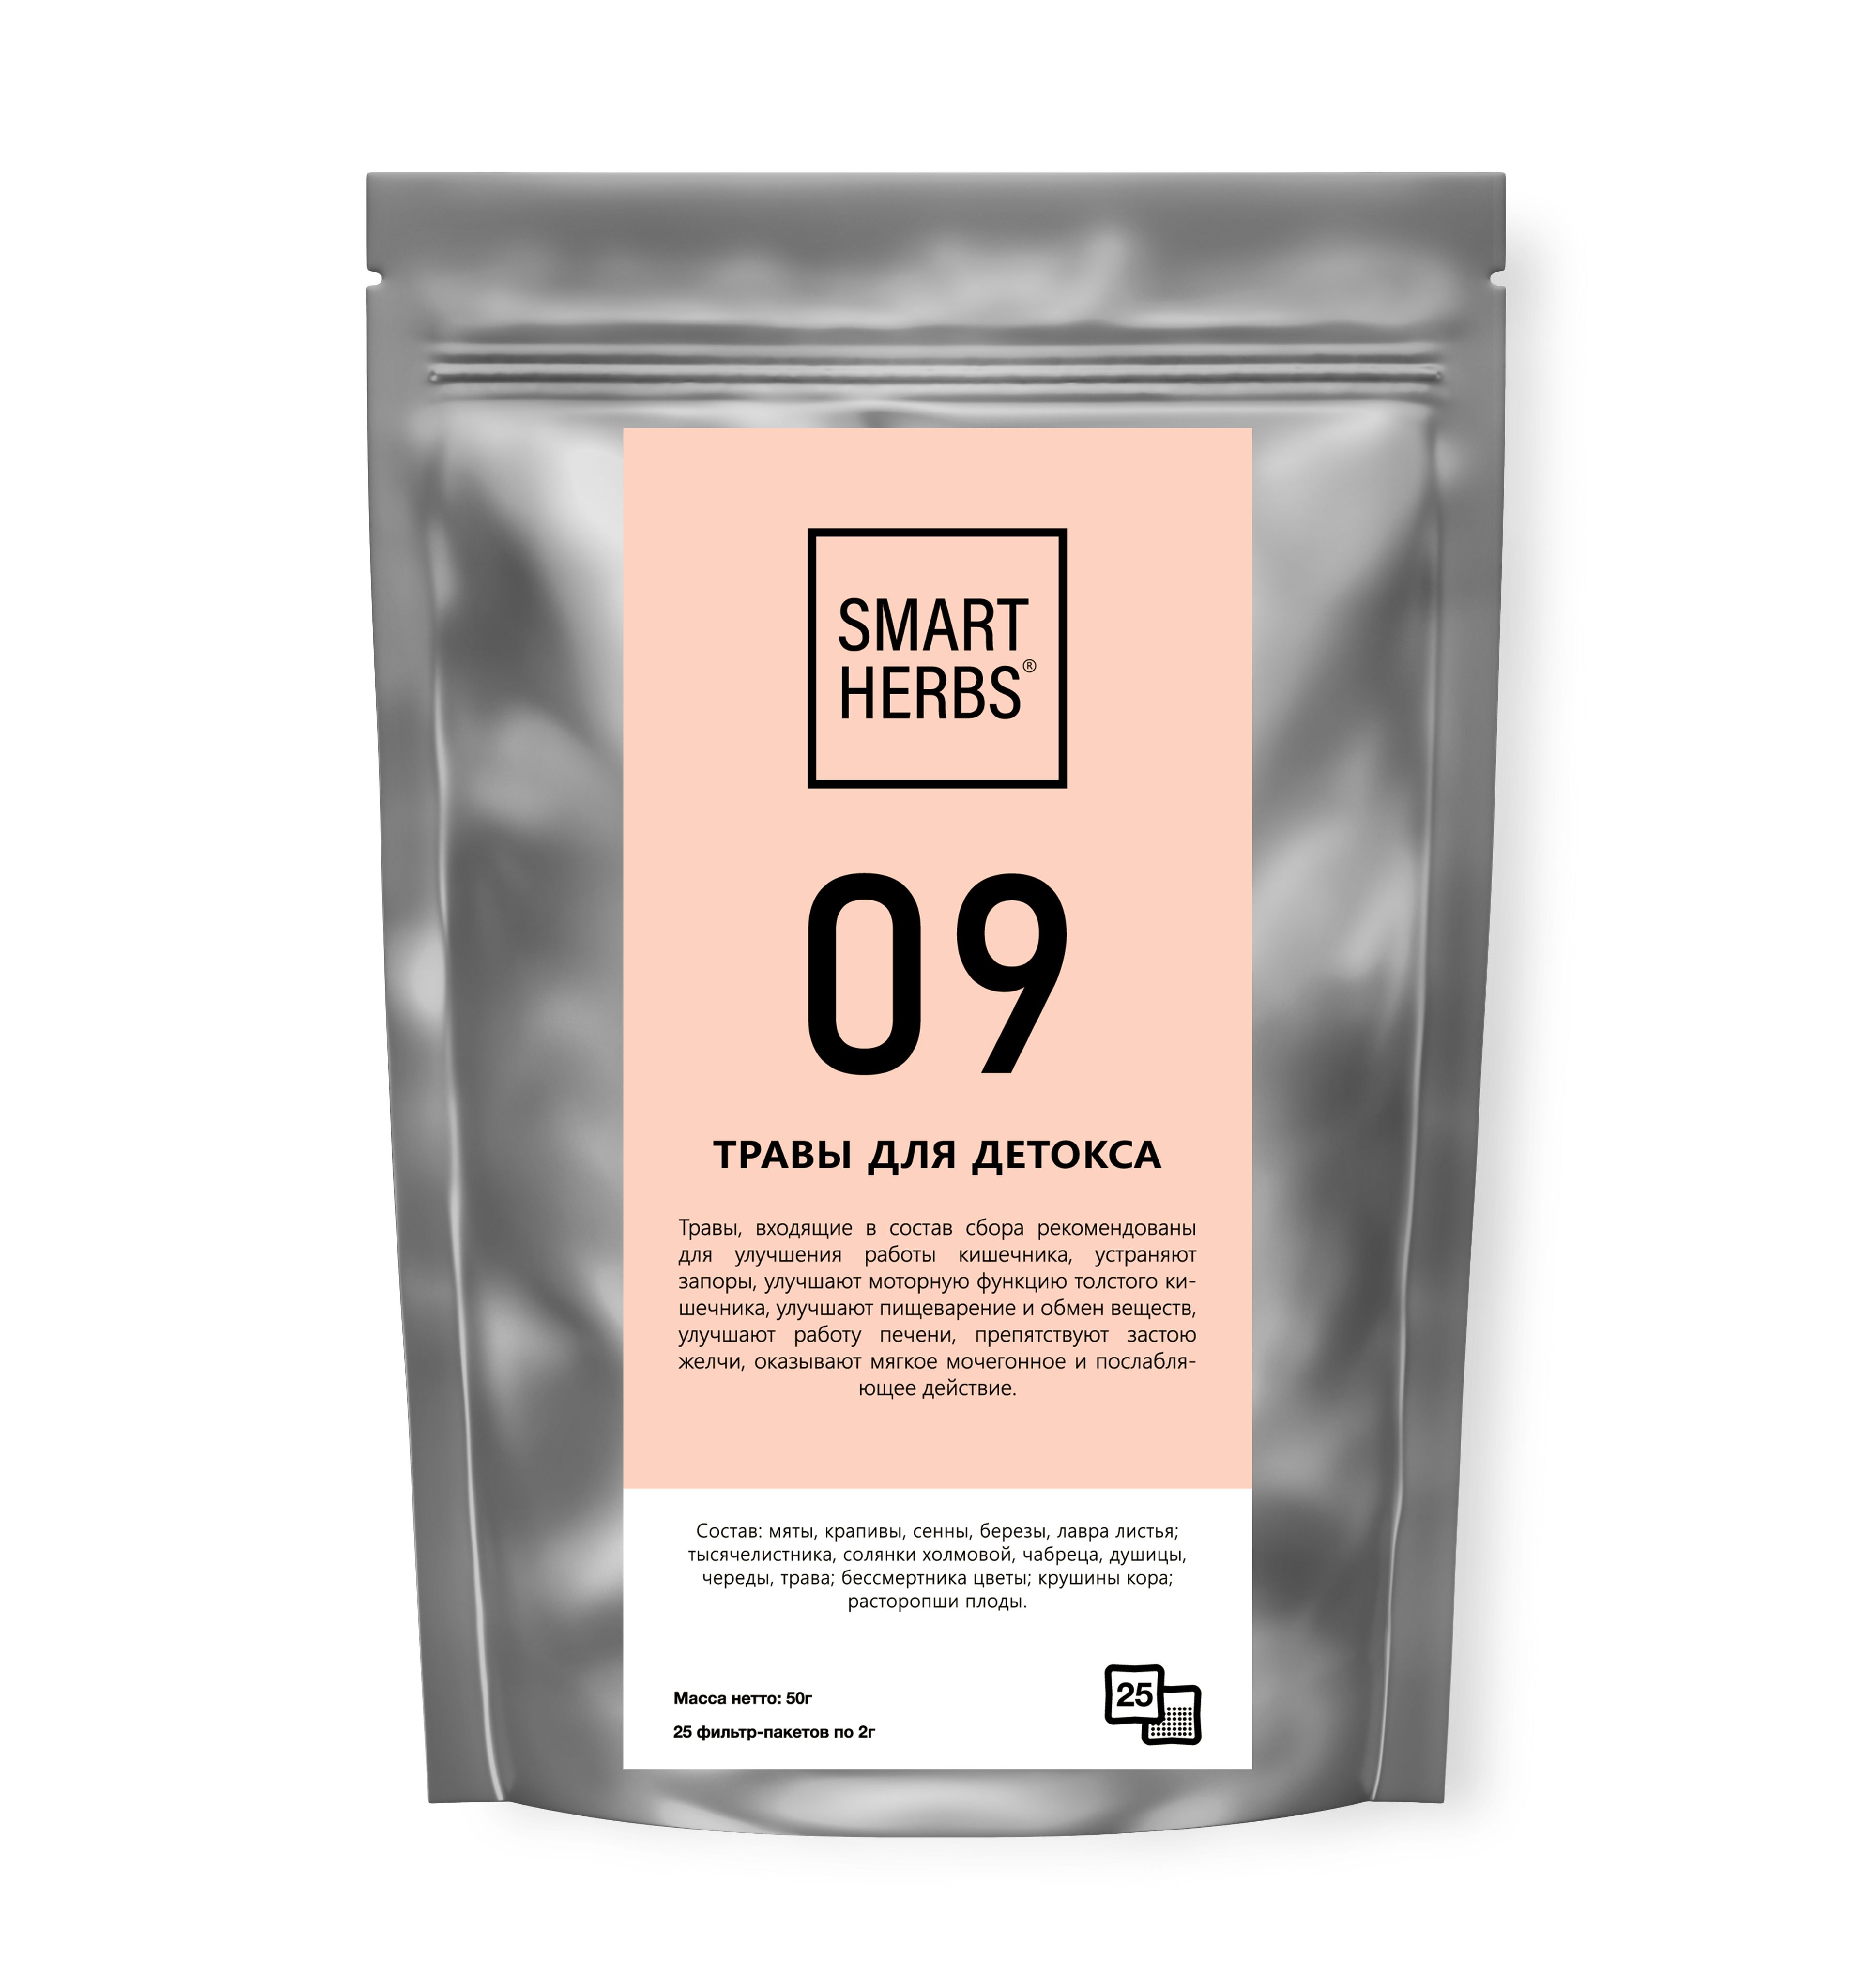 Травяной чай Biopractika smart herbs 09 травы для детокса - фото 1